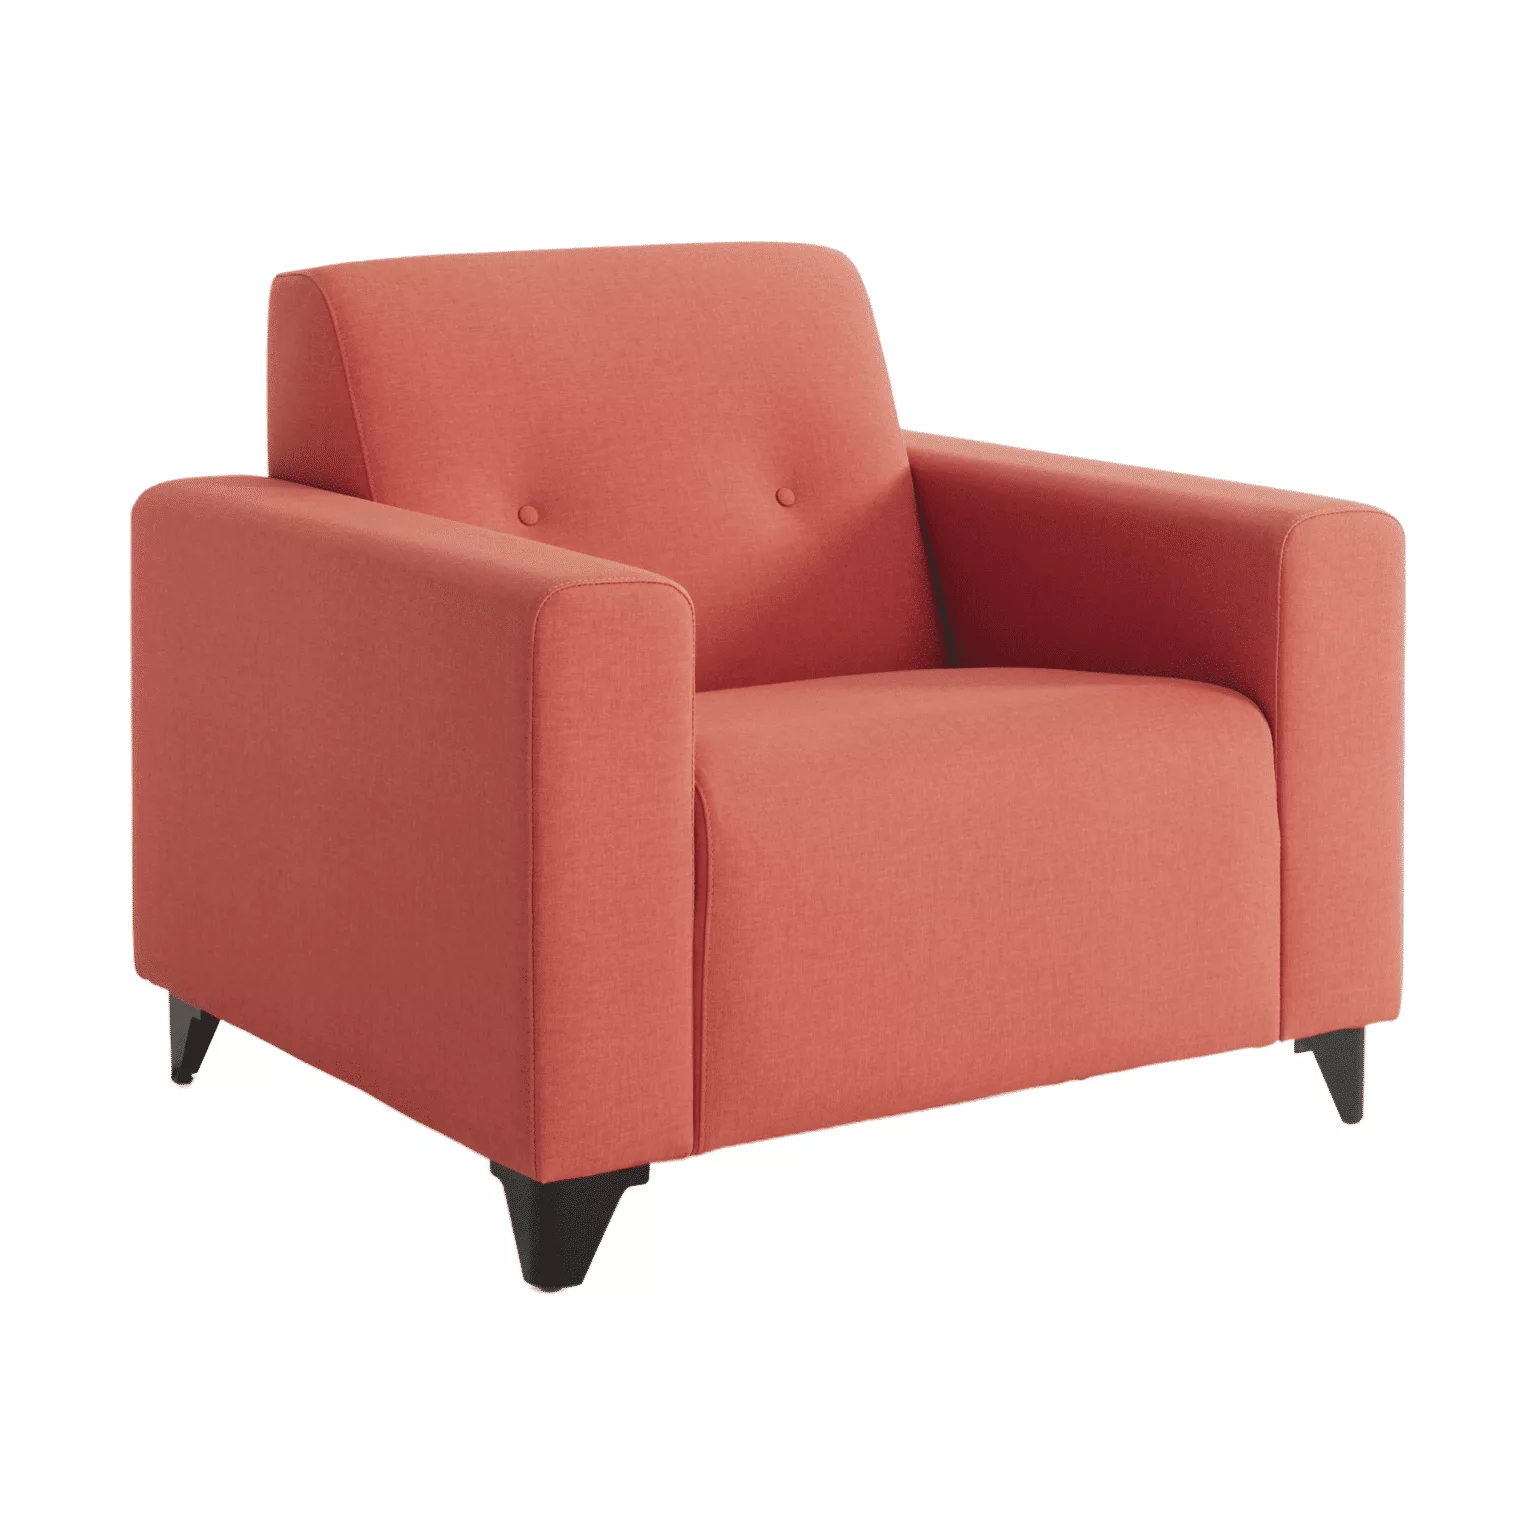 Roze fauteuil met sierknopen in de rug en zwart metalen meubelpoten.